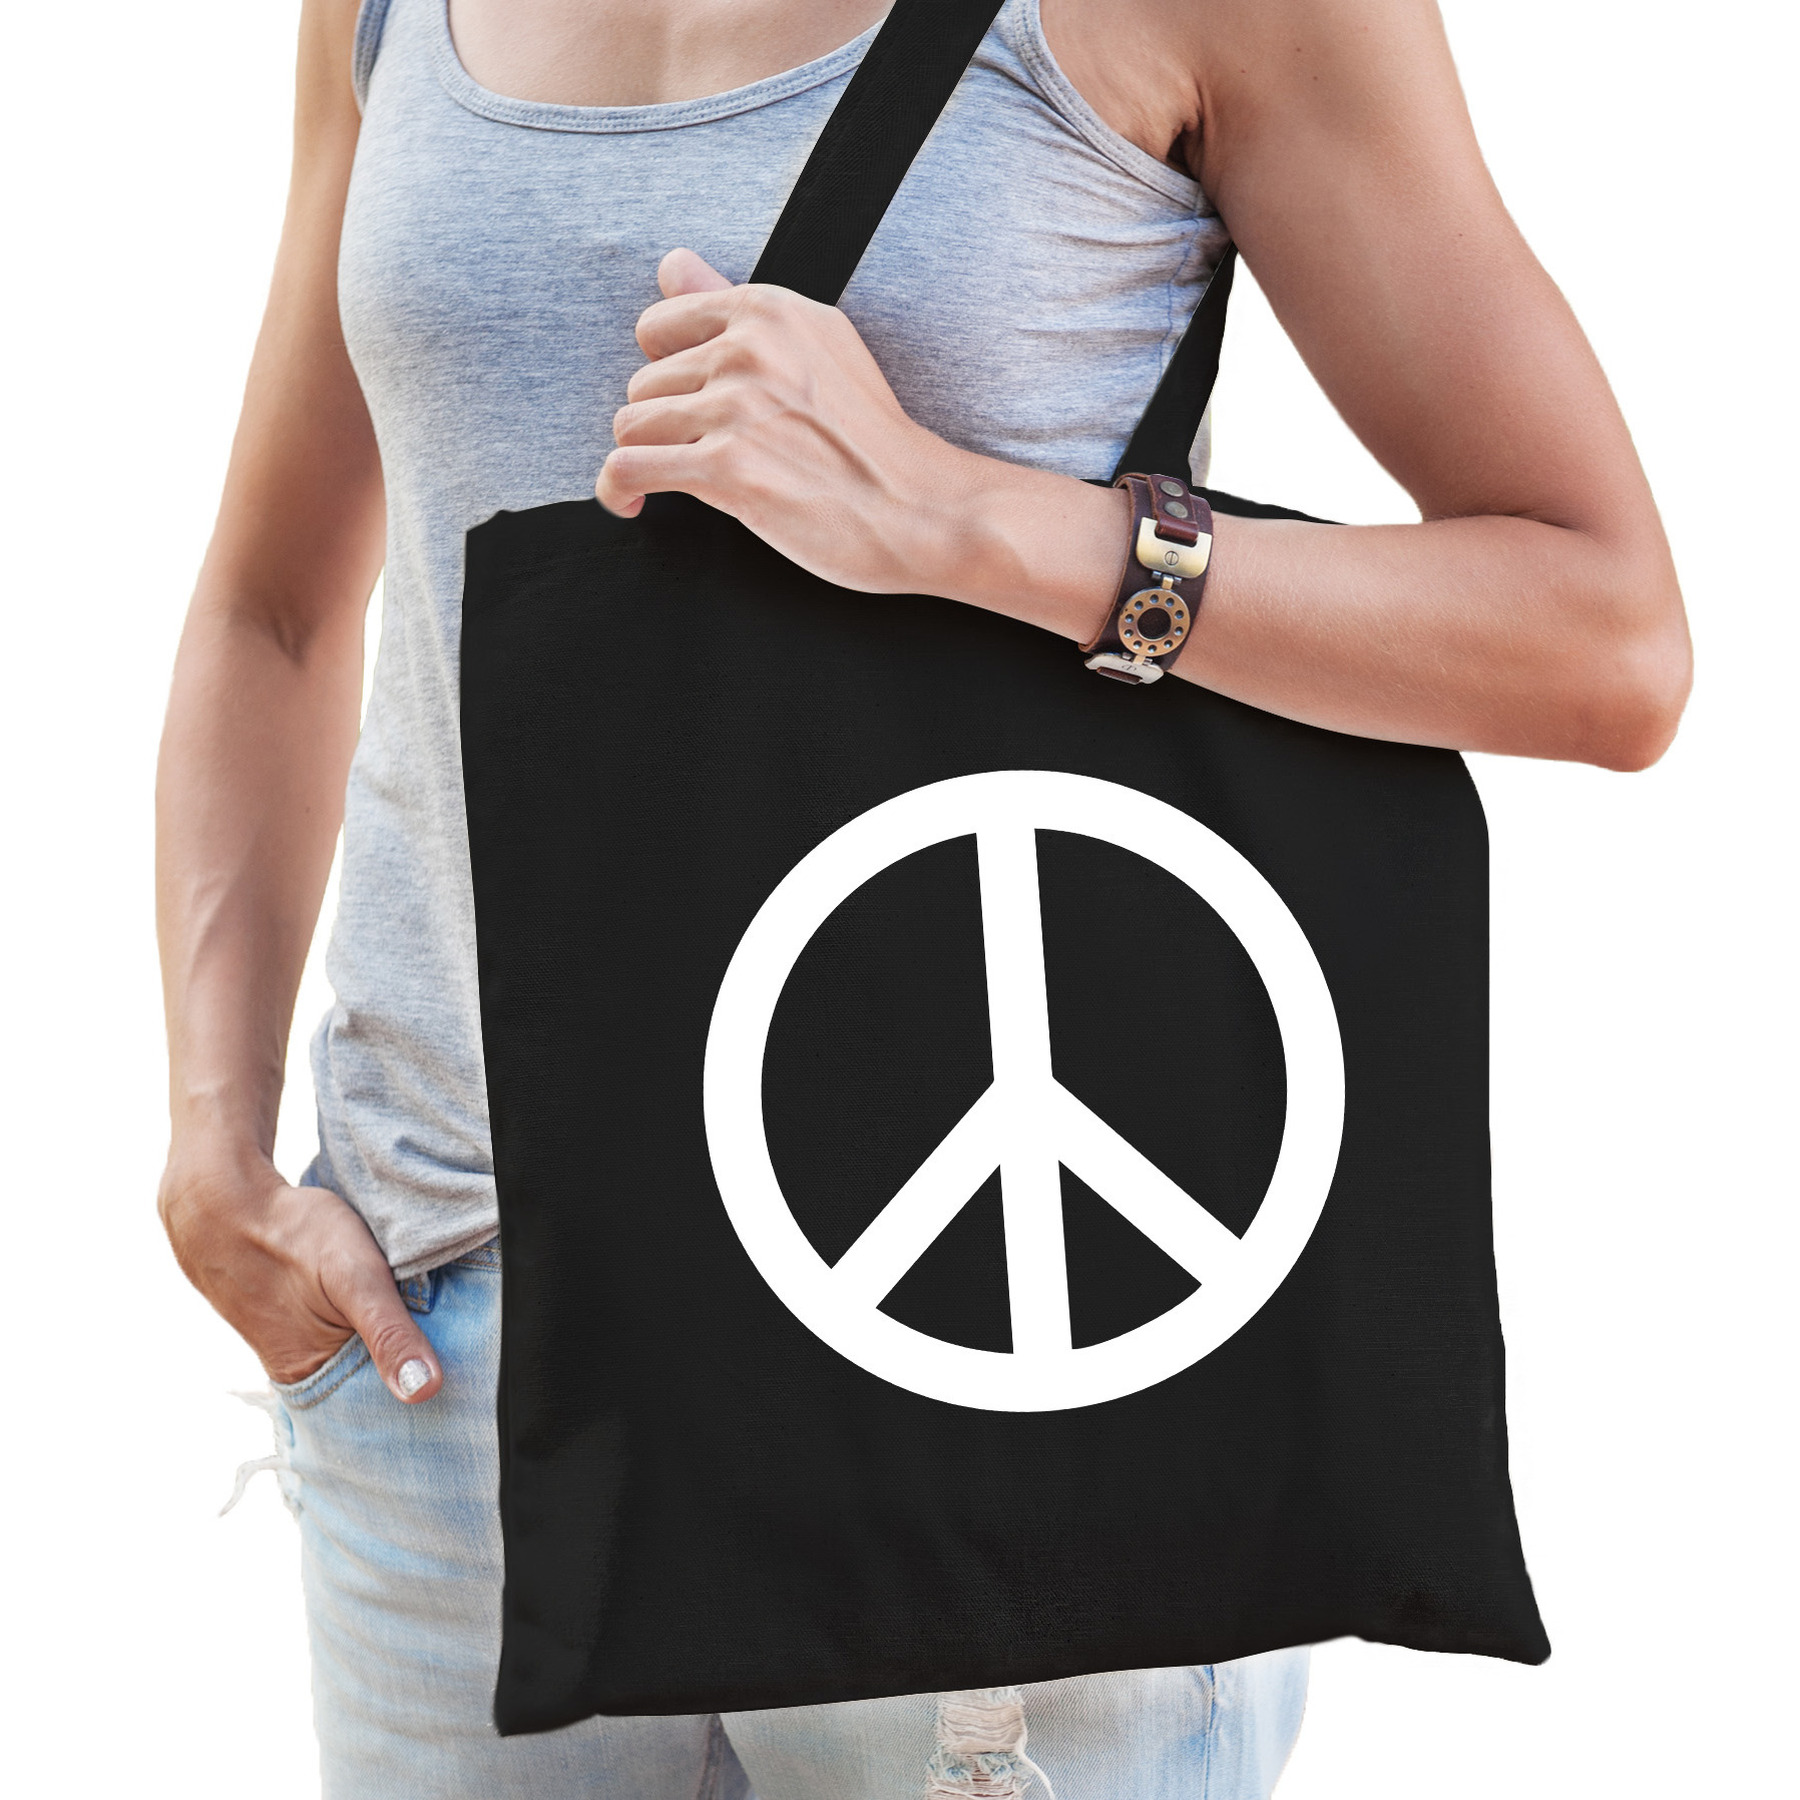 Toppers - Flower Power katoenen tas met peace teken zwart voor volwassenen